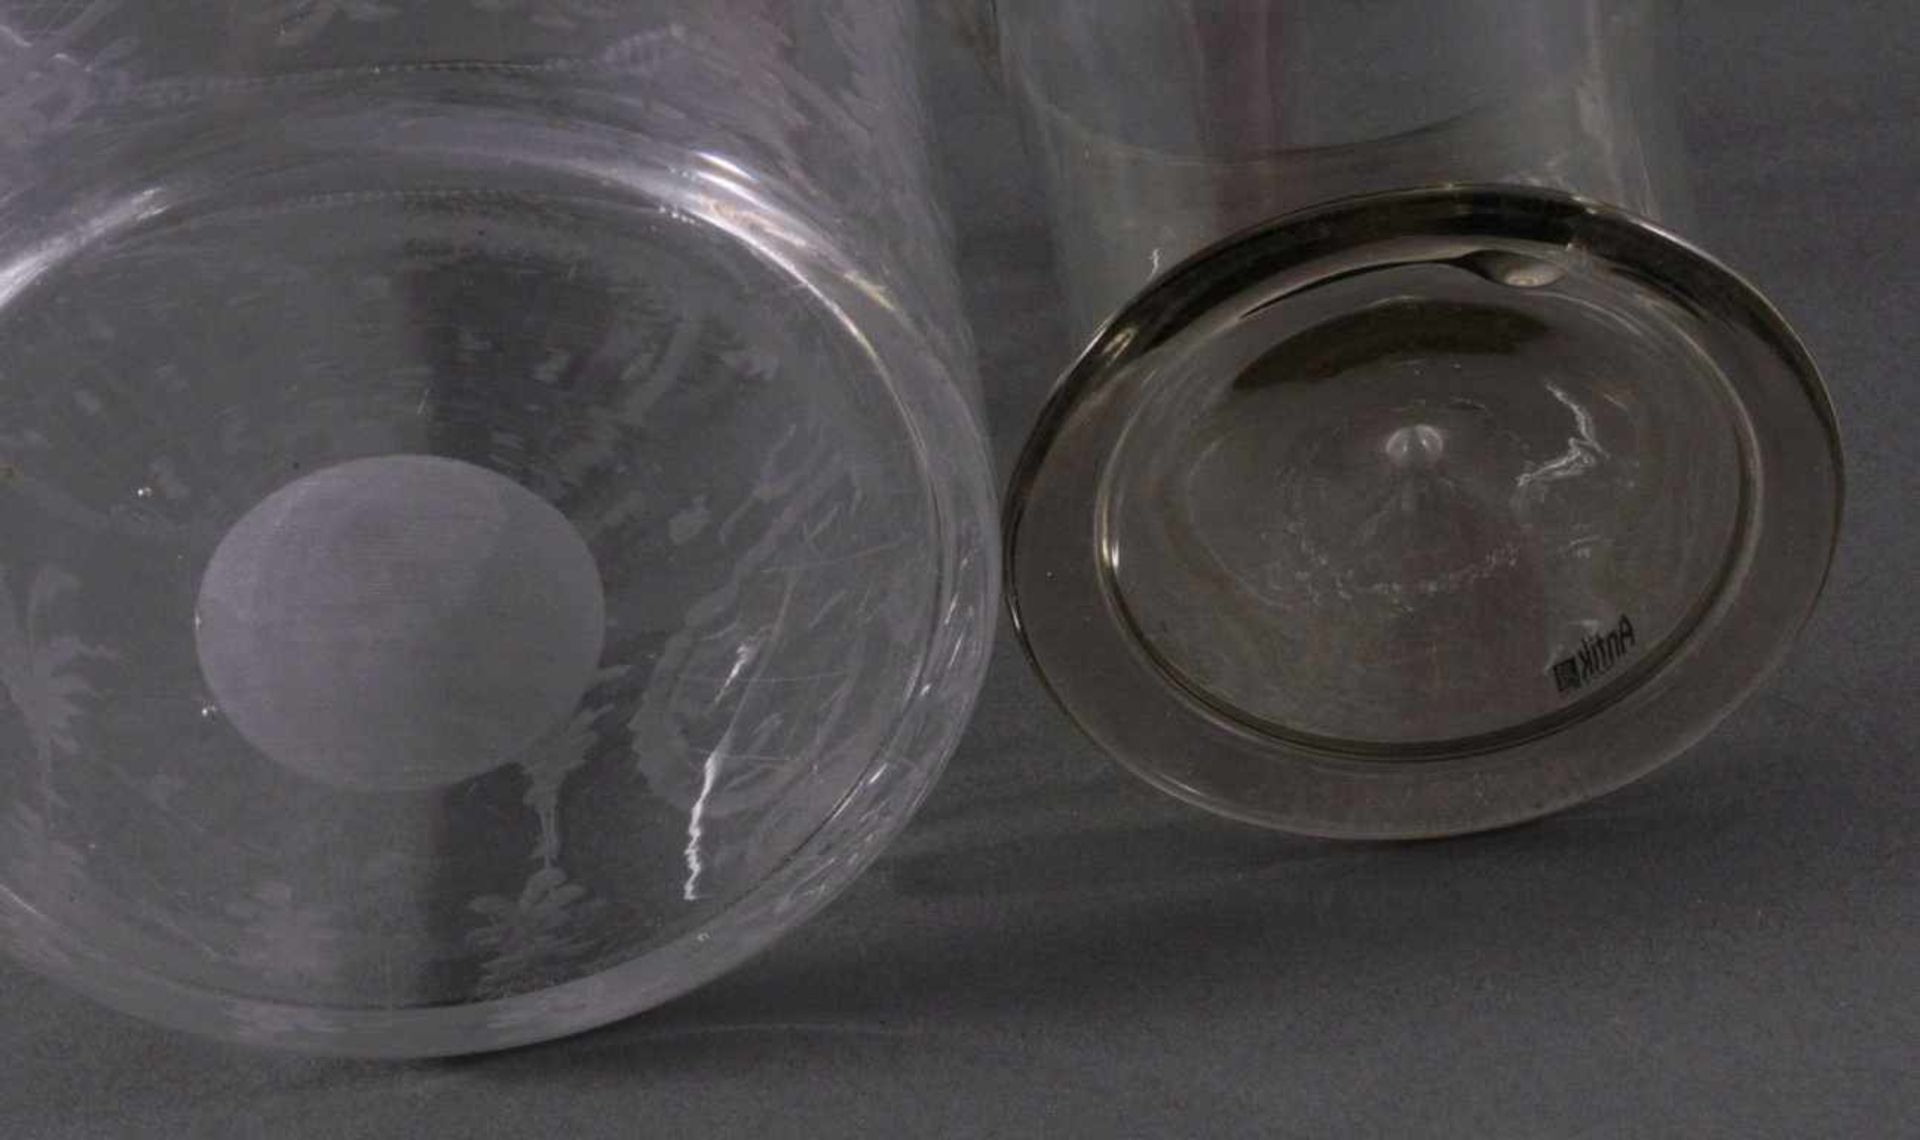 Zwei GlasvasenFarbloses Kristallglas mundgeblasen, geschnittener Boden.1x Böhmen, Nový Bor, Klarglas - Image 6 of 6